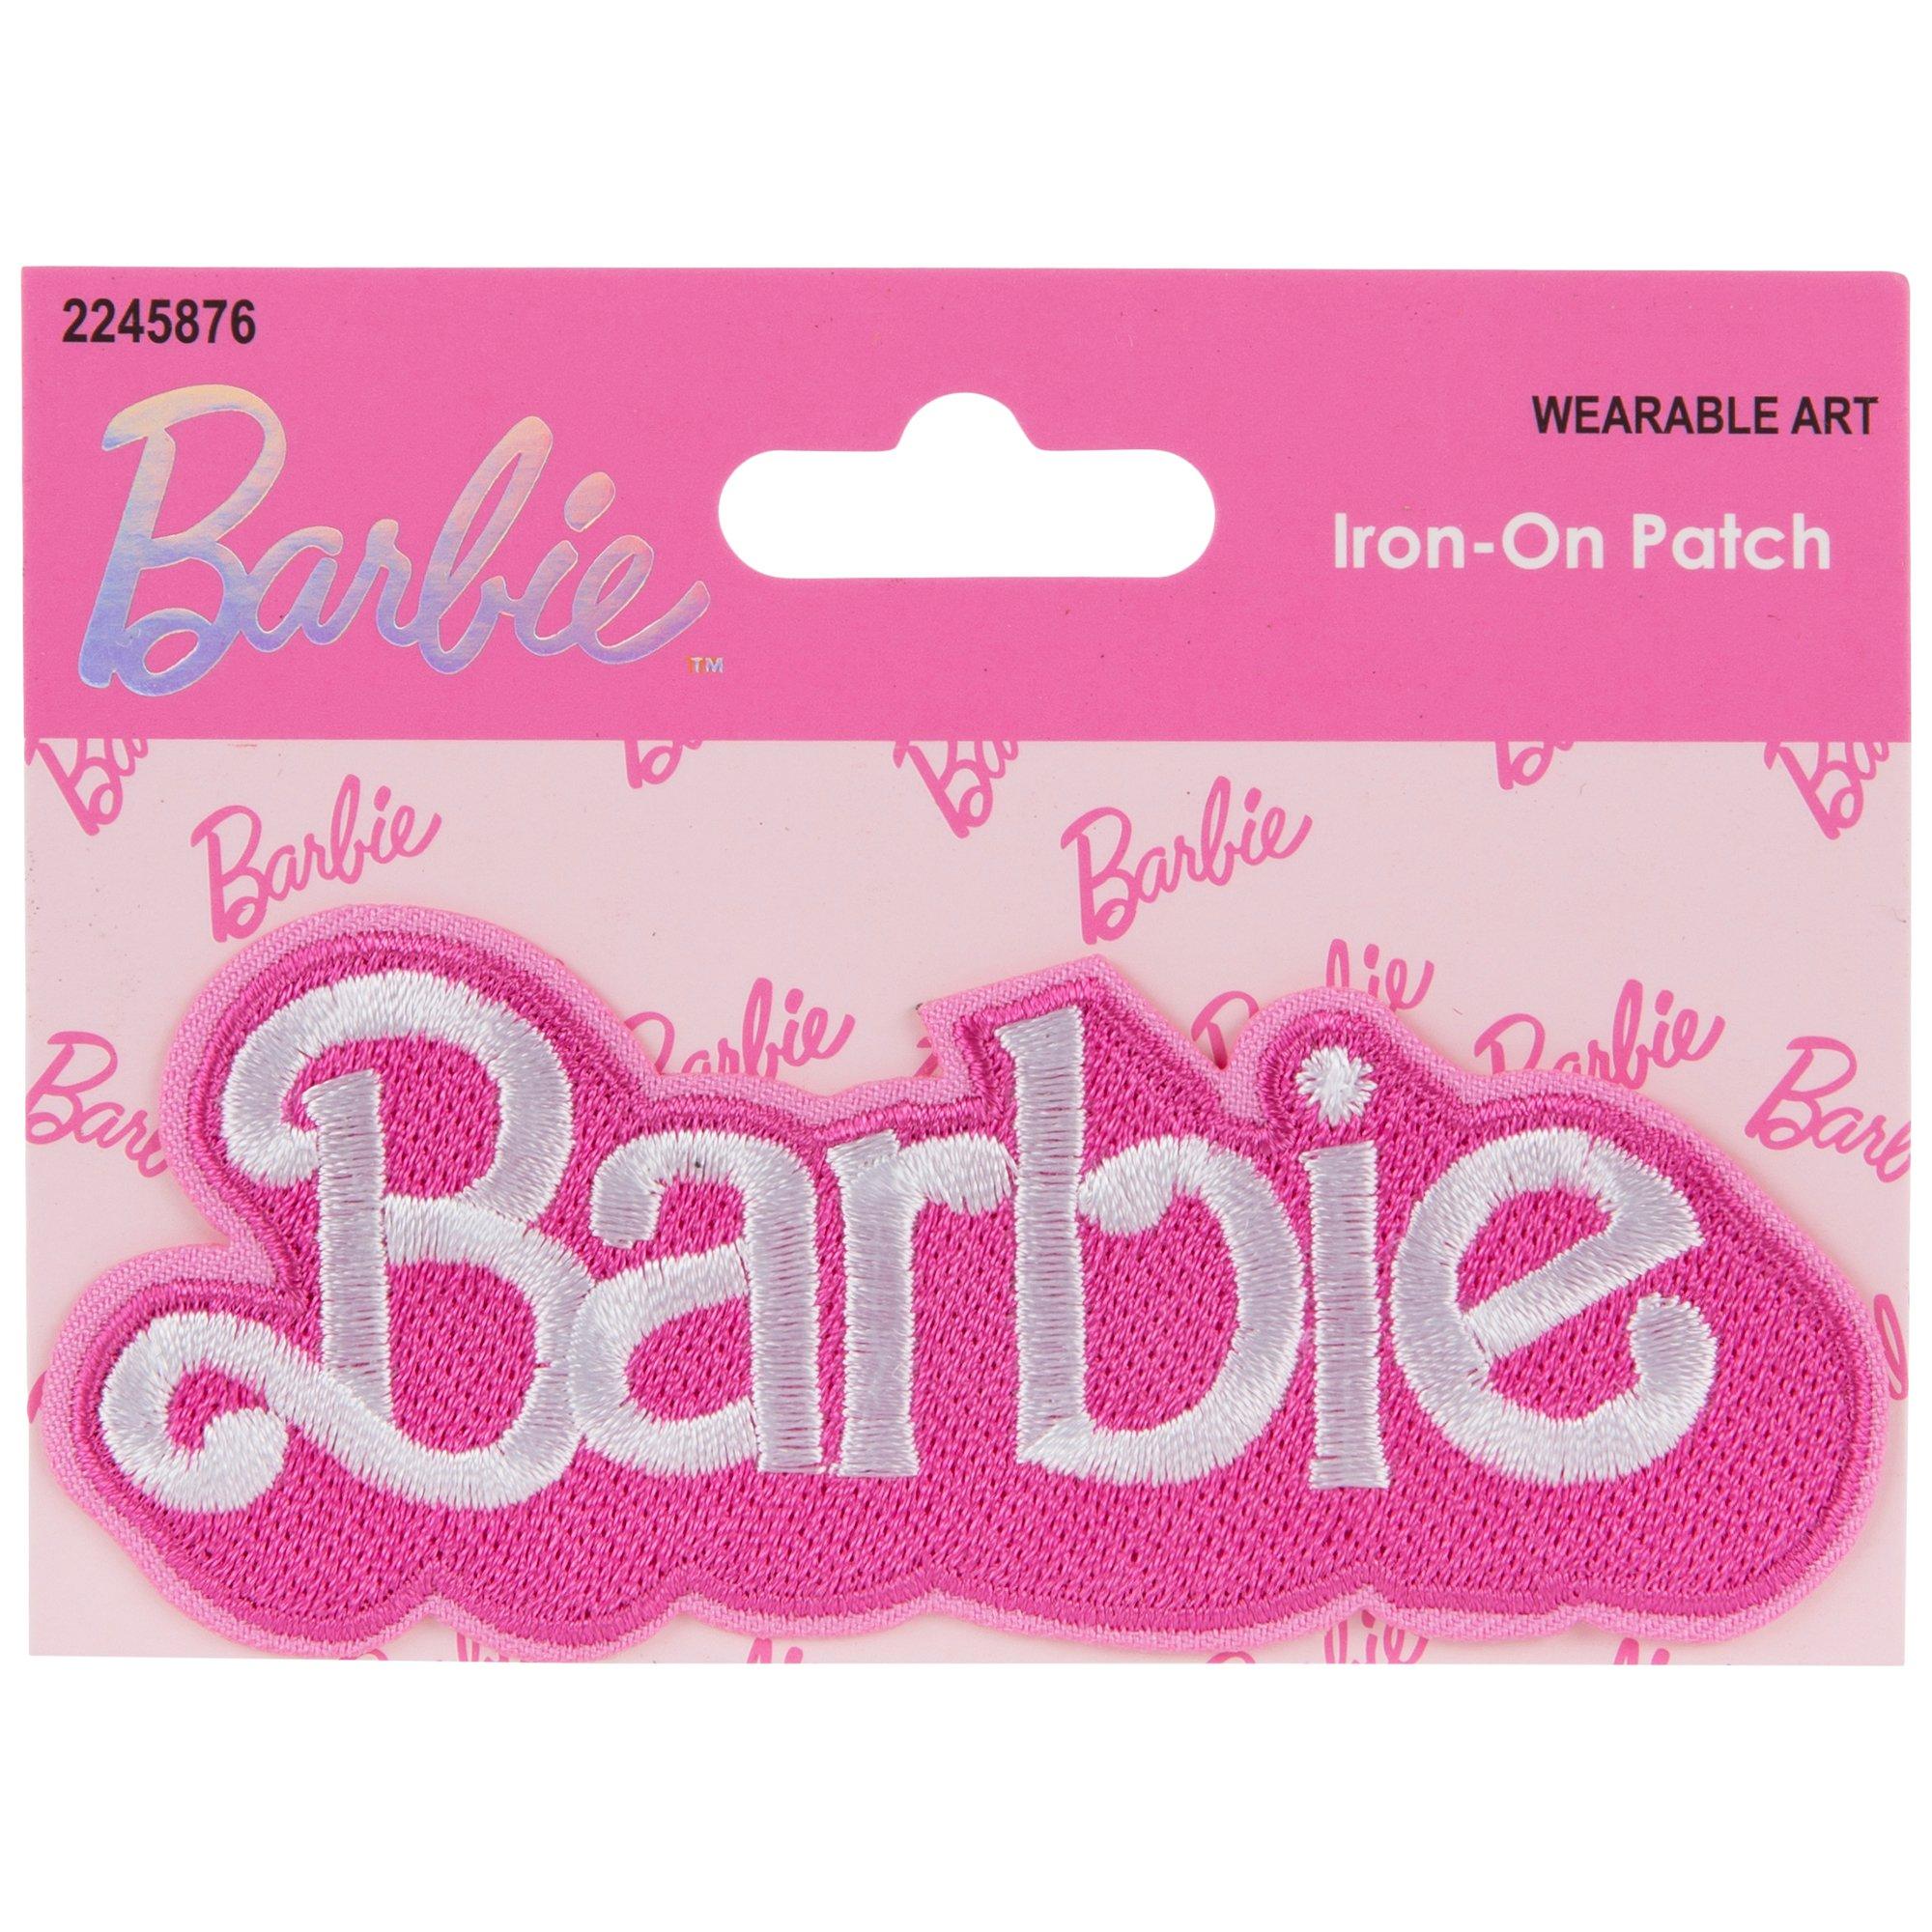 barbie hobby lobby｜TikTok Search